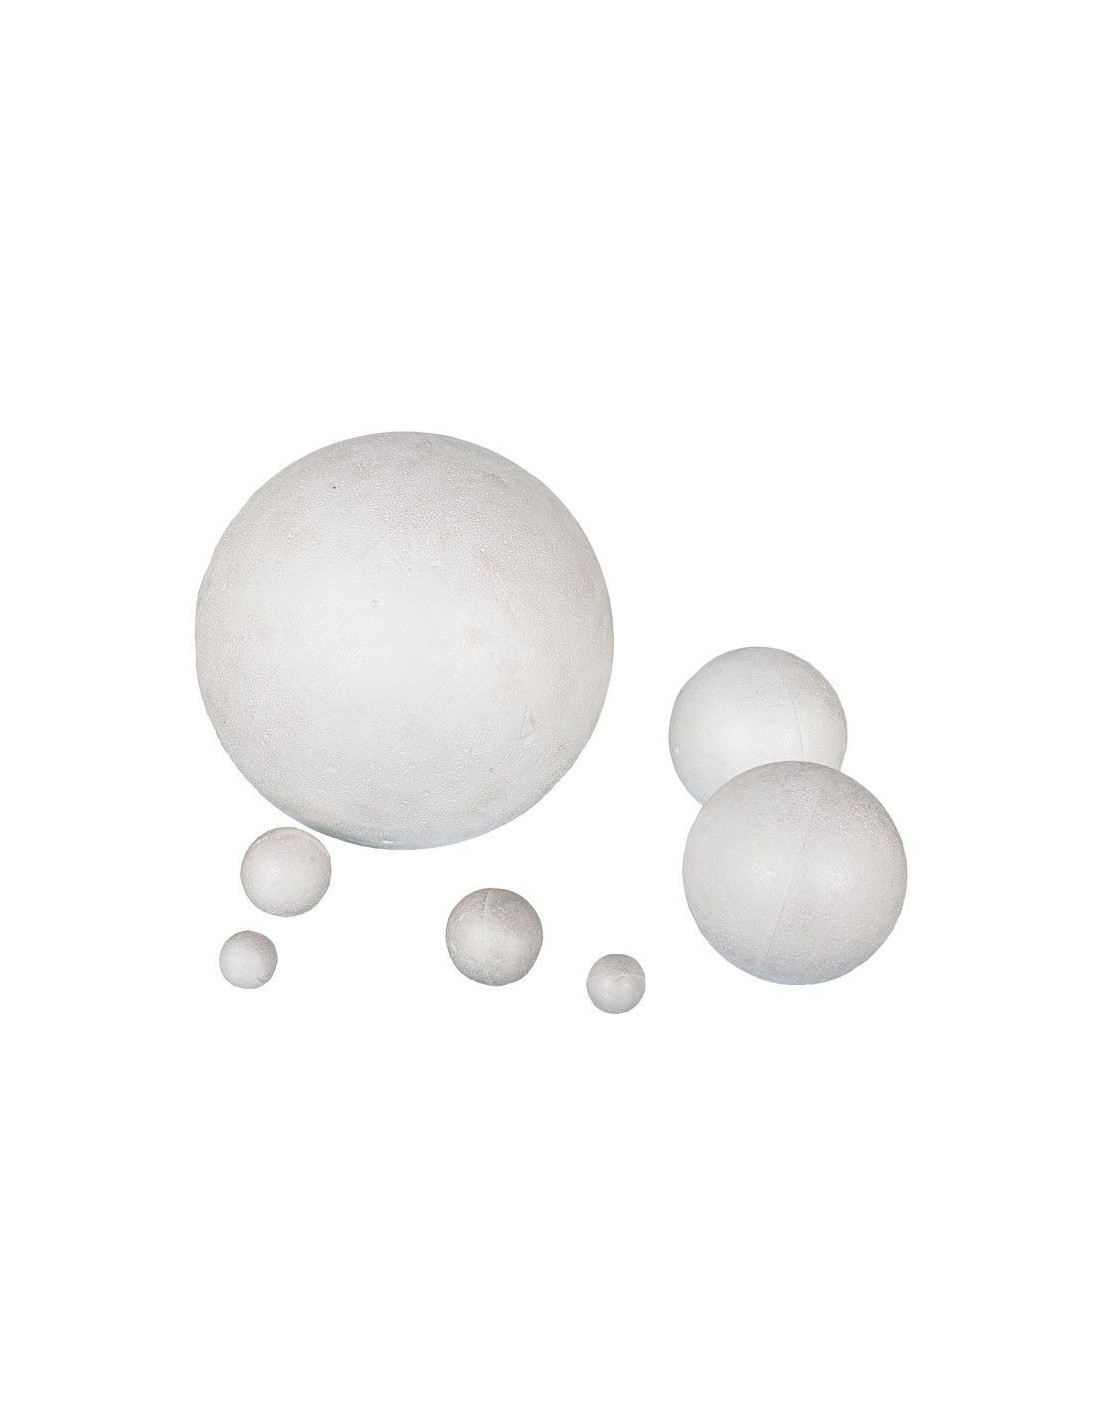 20 litros . TradeMile Perlas de poliestireno expandido de marcas alemanas originales / bolas de poliestireno de alta calidad ideales para pufs de muy alta calidad 